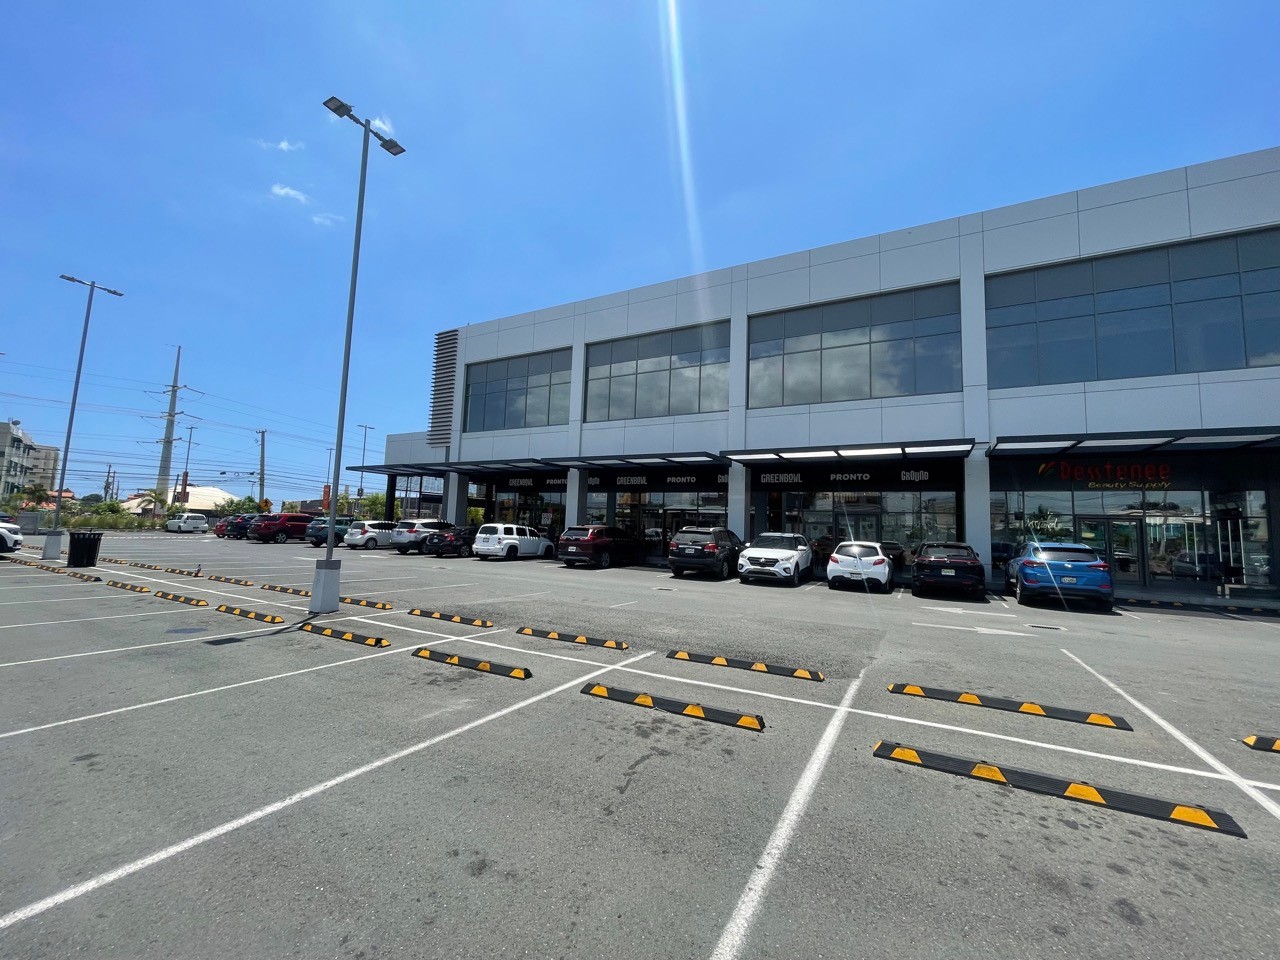 oficinas y locales comerciales - Locales Comerciales en metro Plaza San Isidro dese 138 metros  3